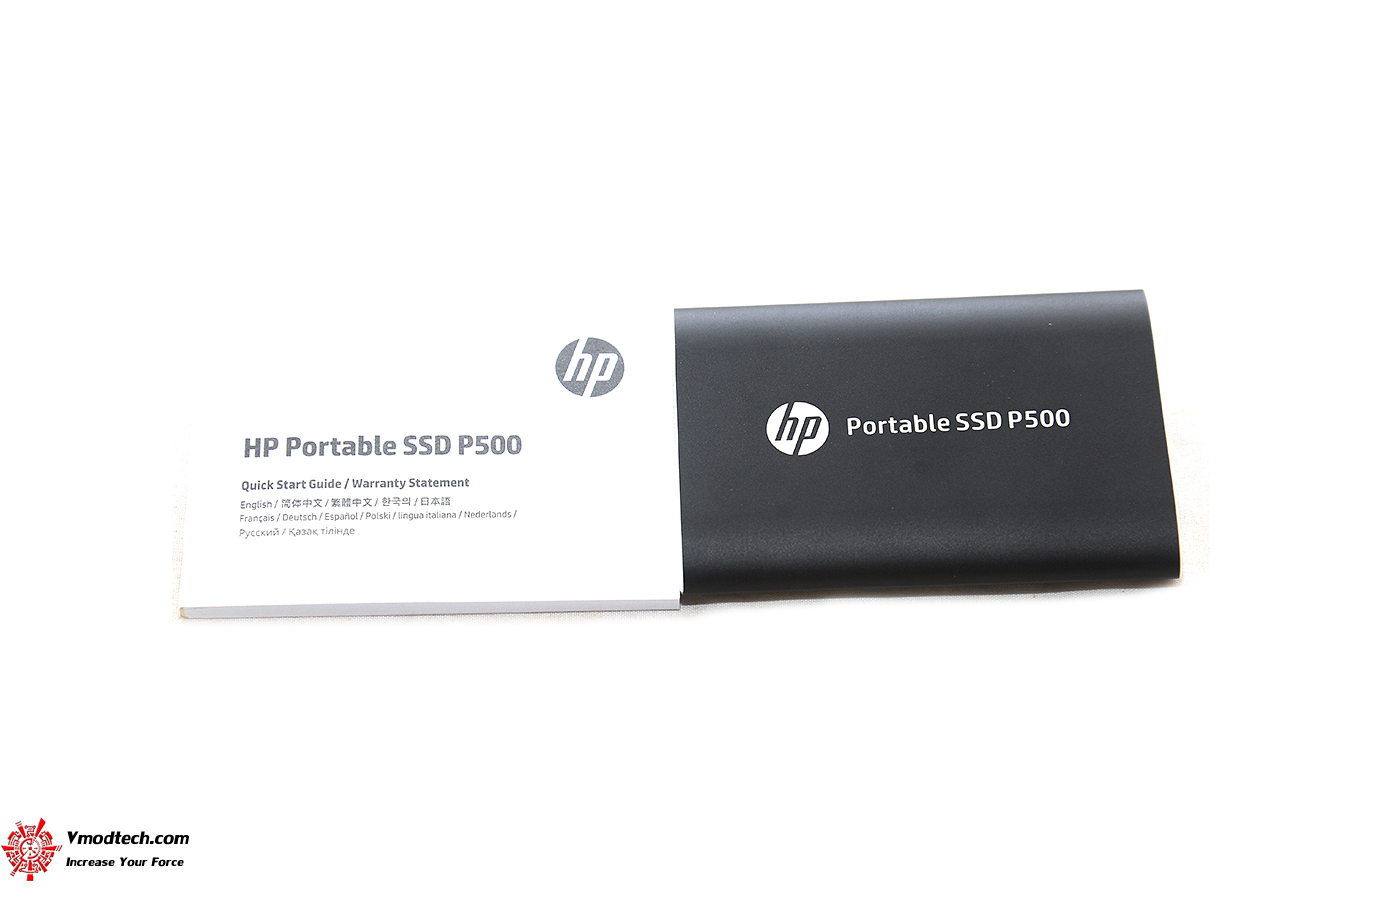 dsc 9019 HP Portable SSD P500 250GB Review